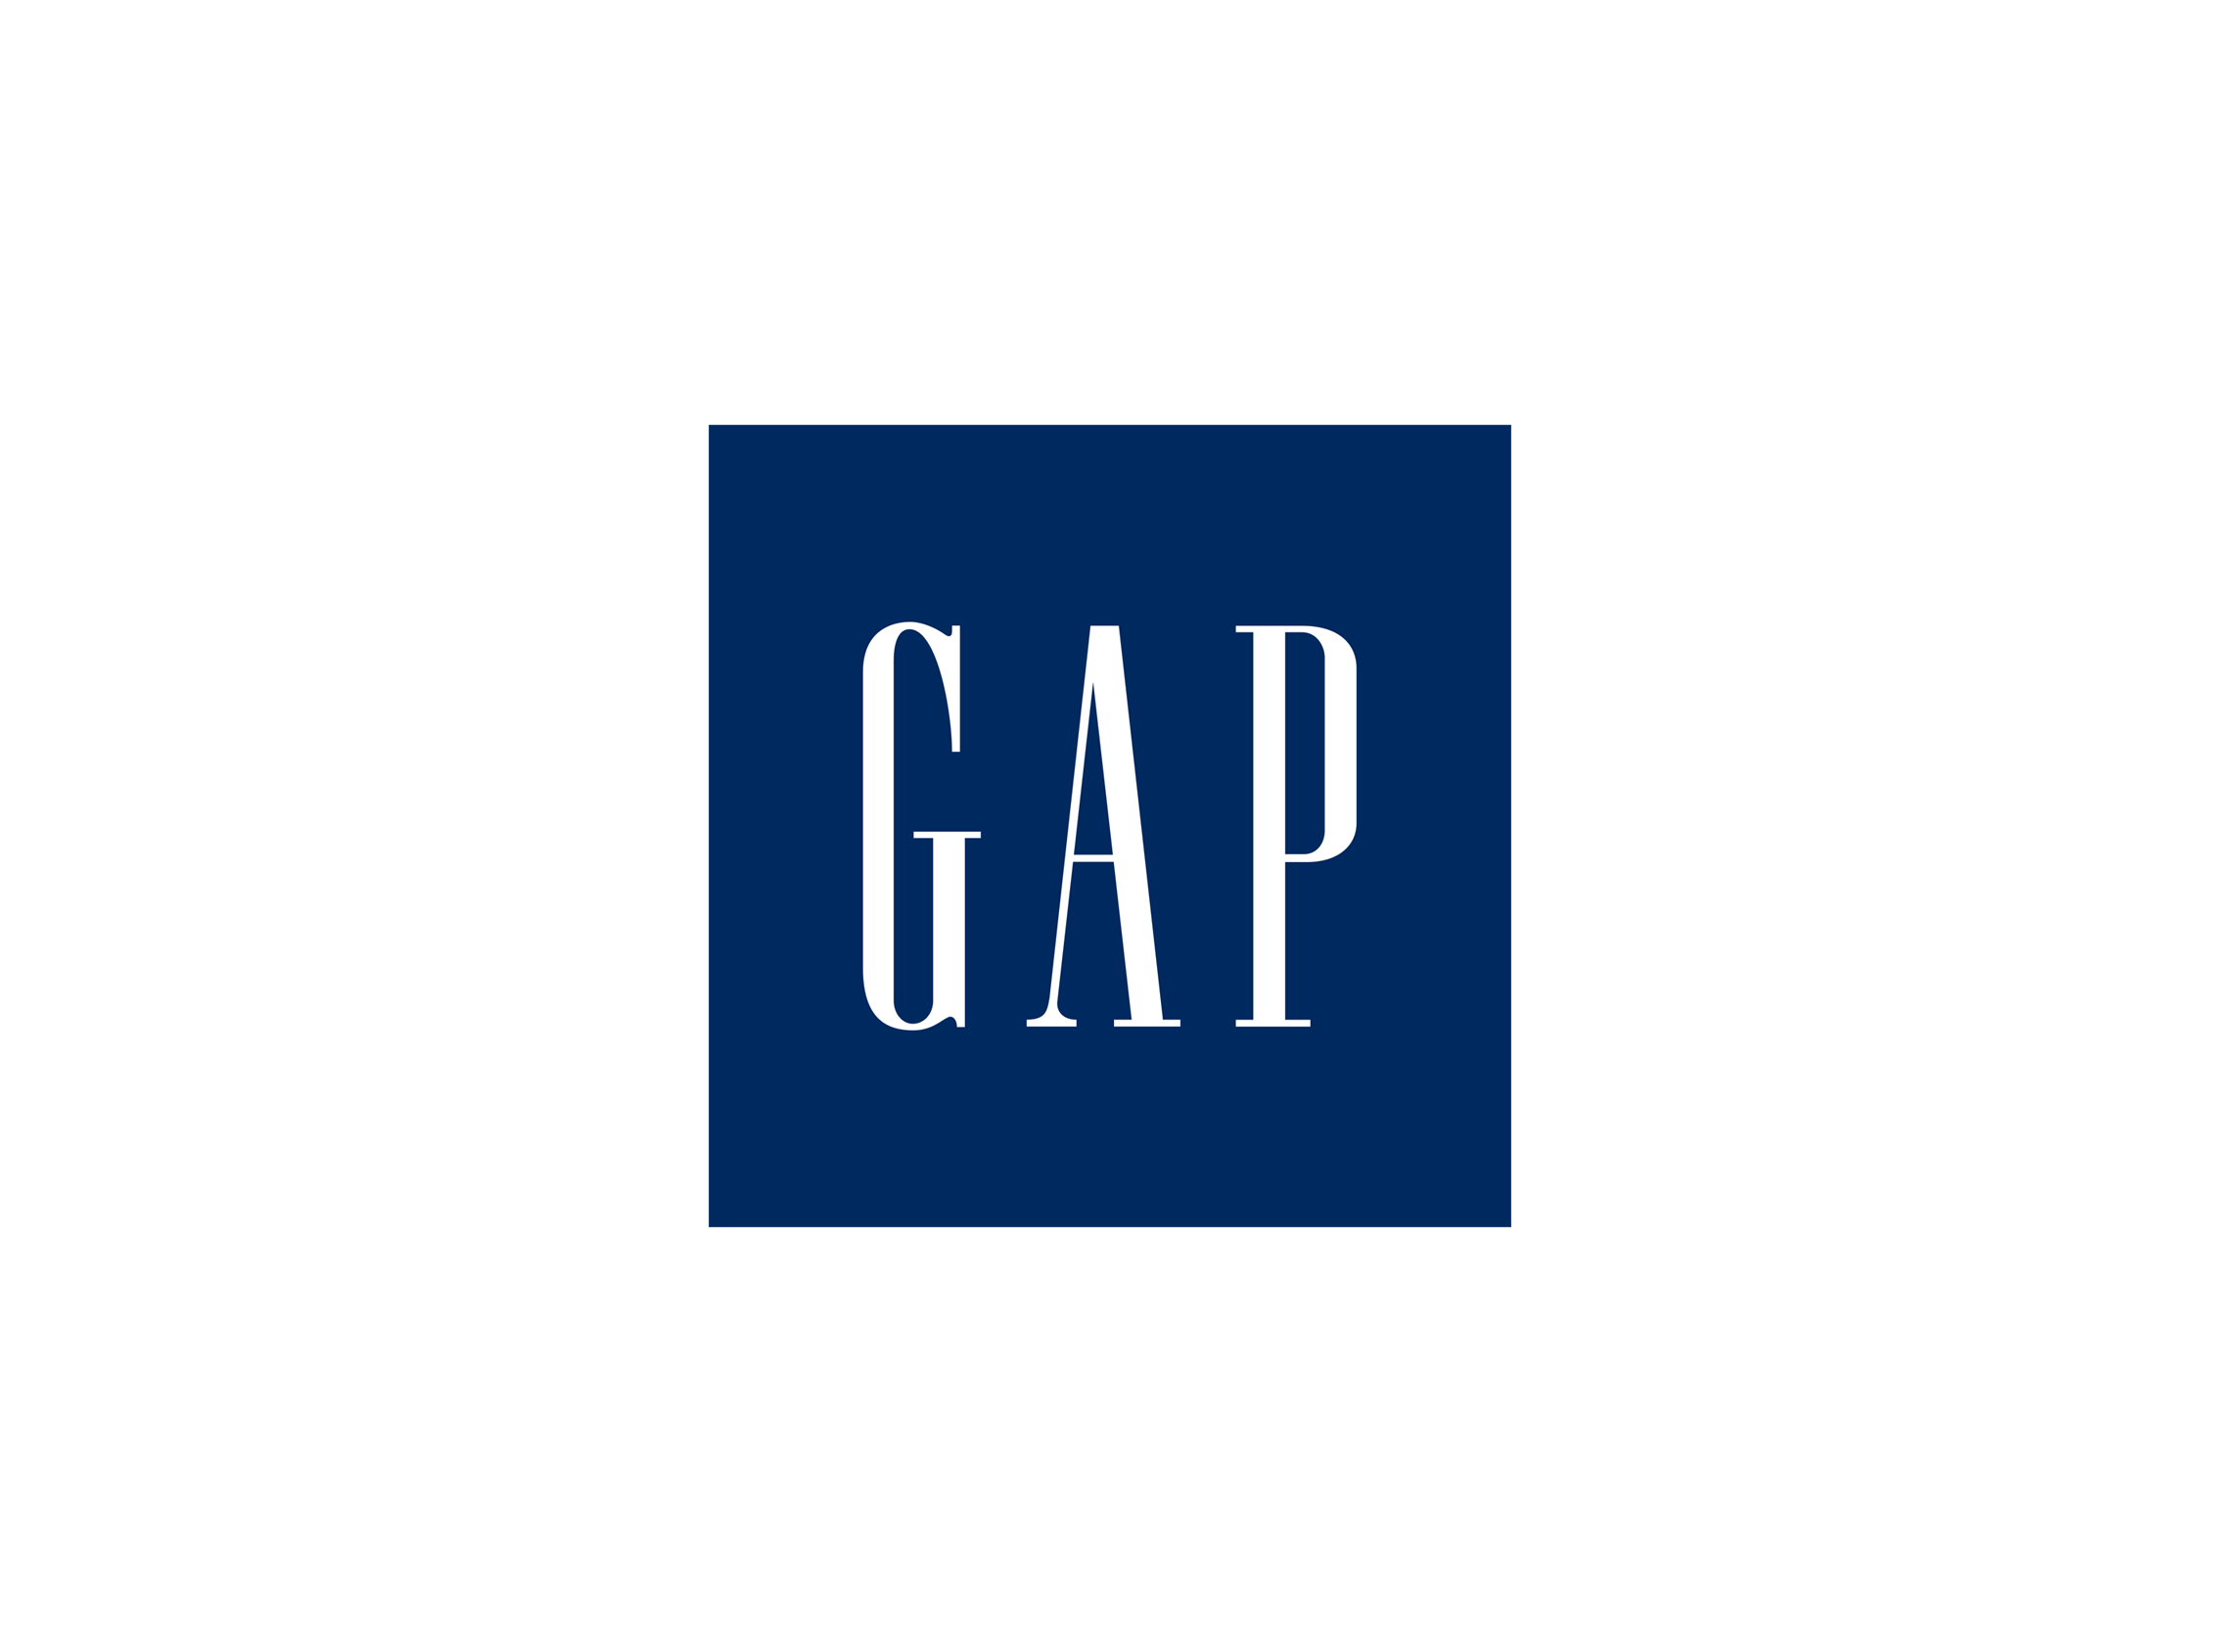 GAP logo PNG imagen de alta calidad